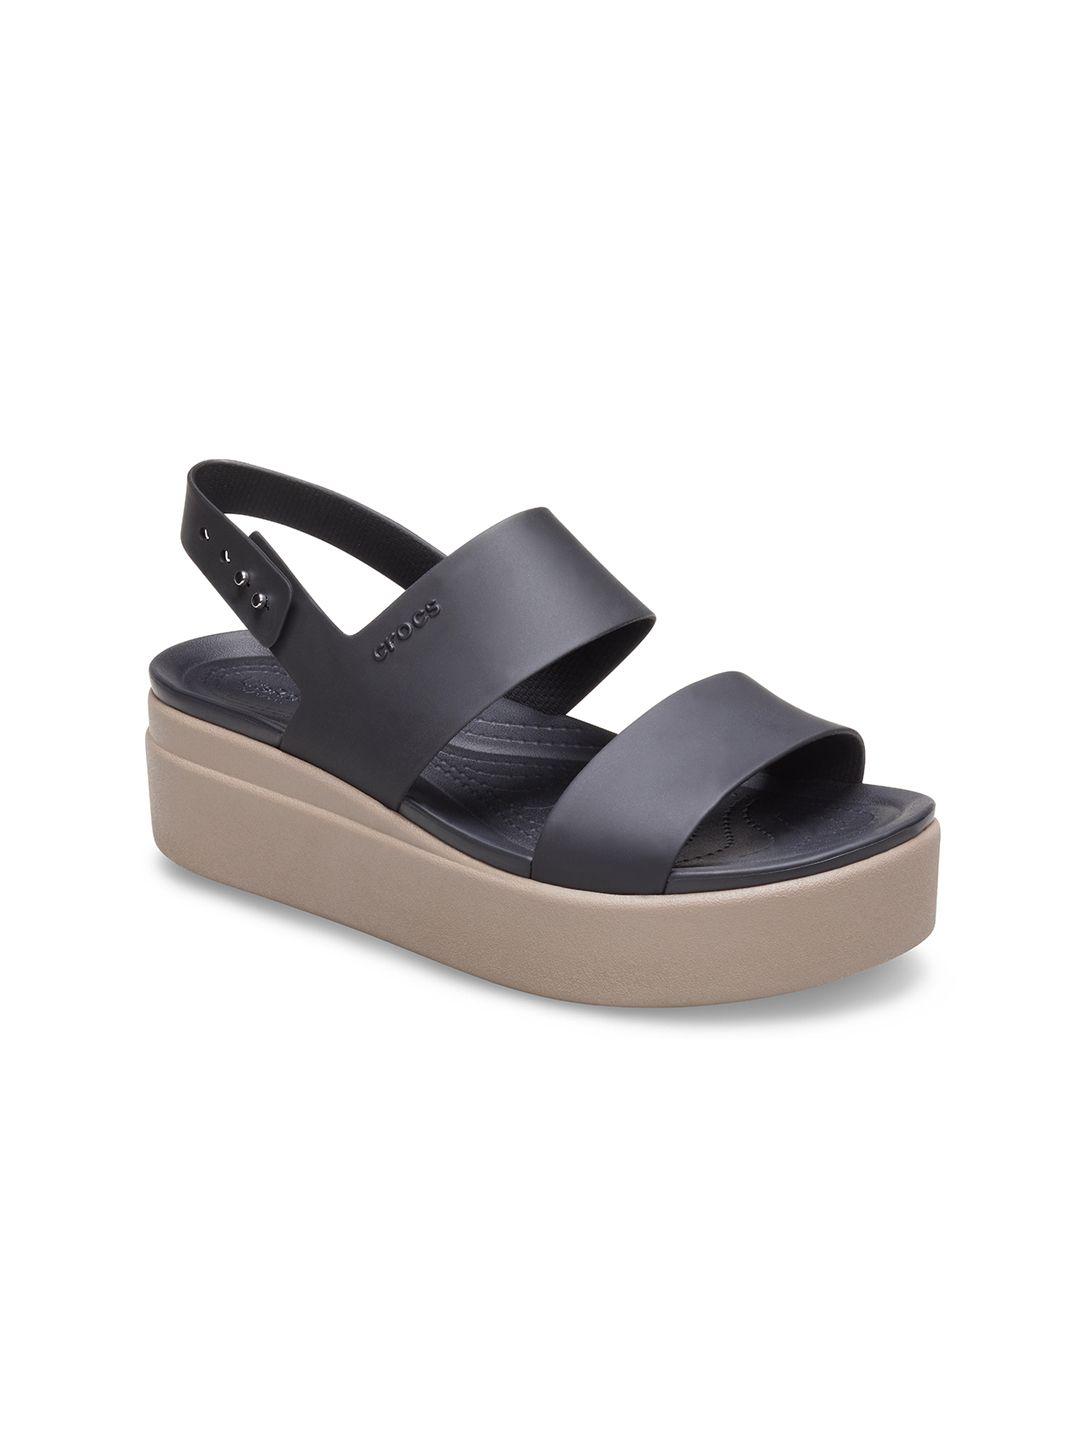 crocs-open-toe-croslite-flatform-heels